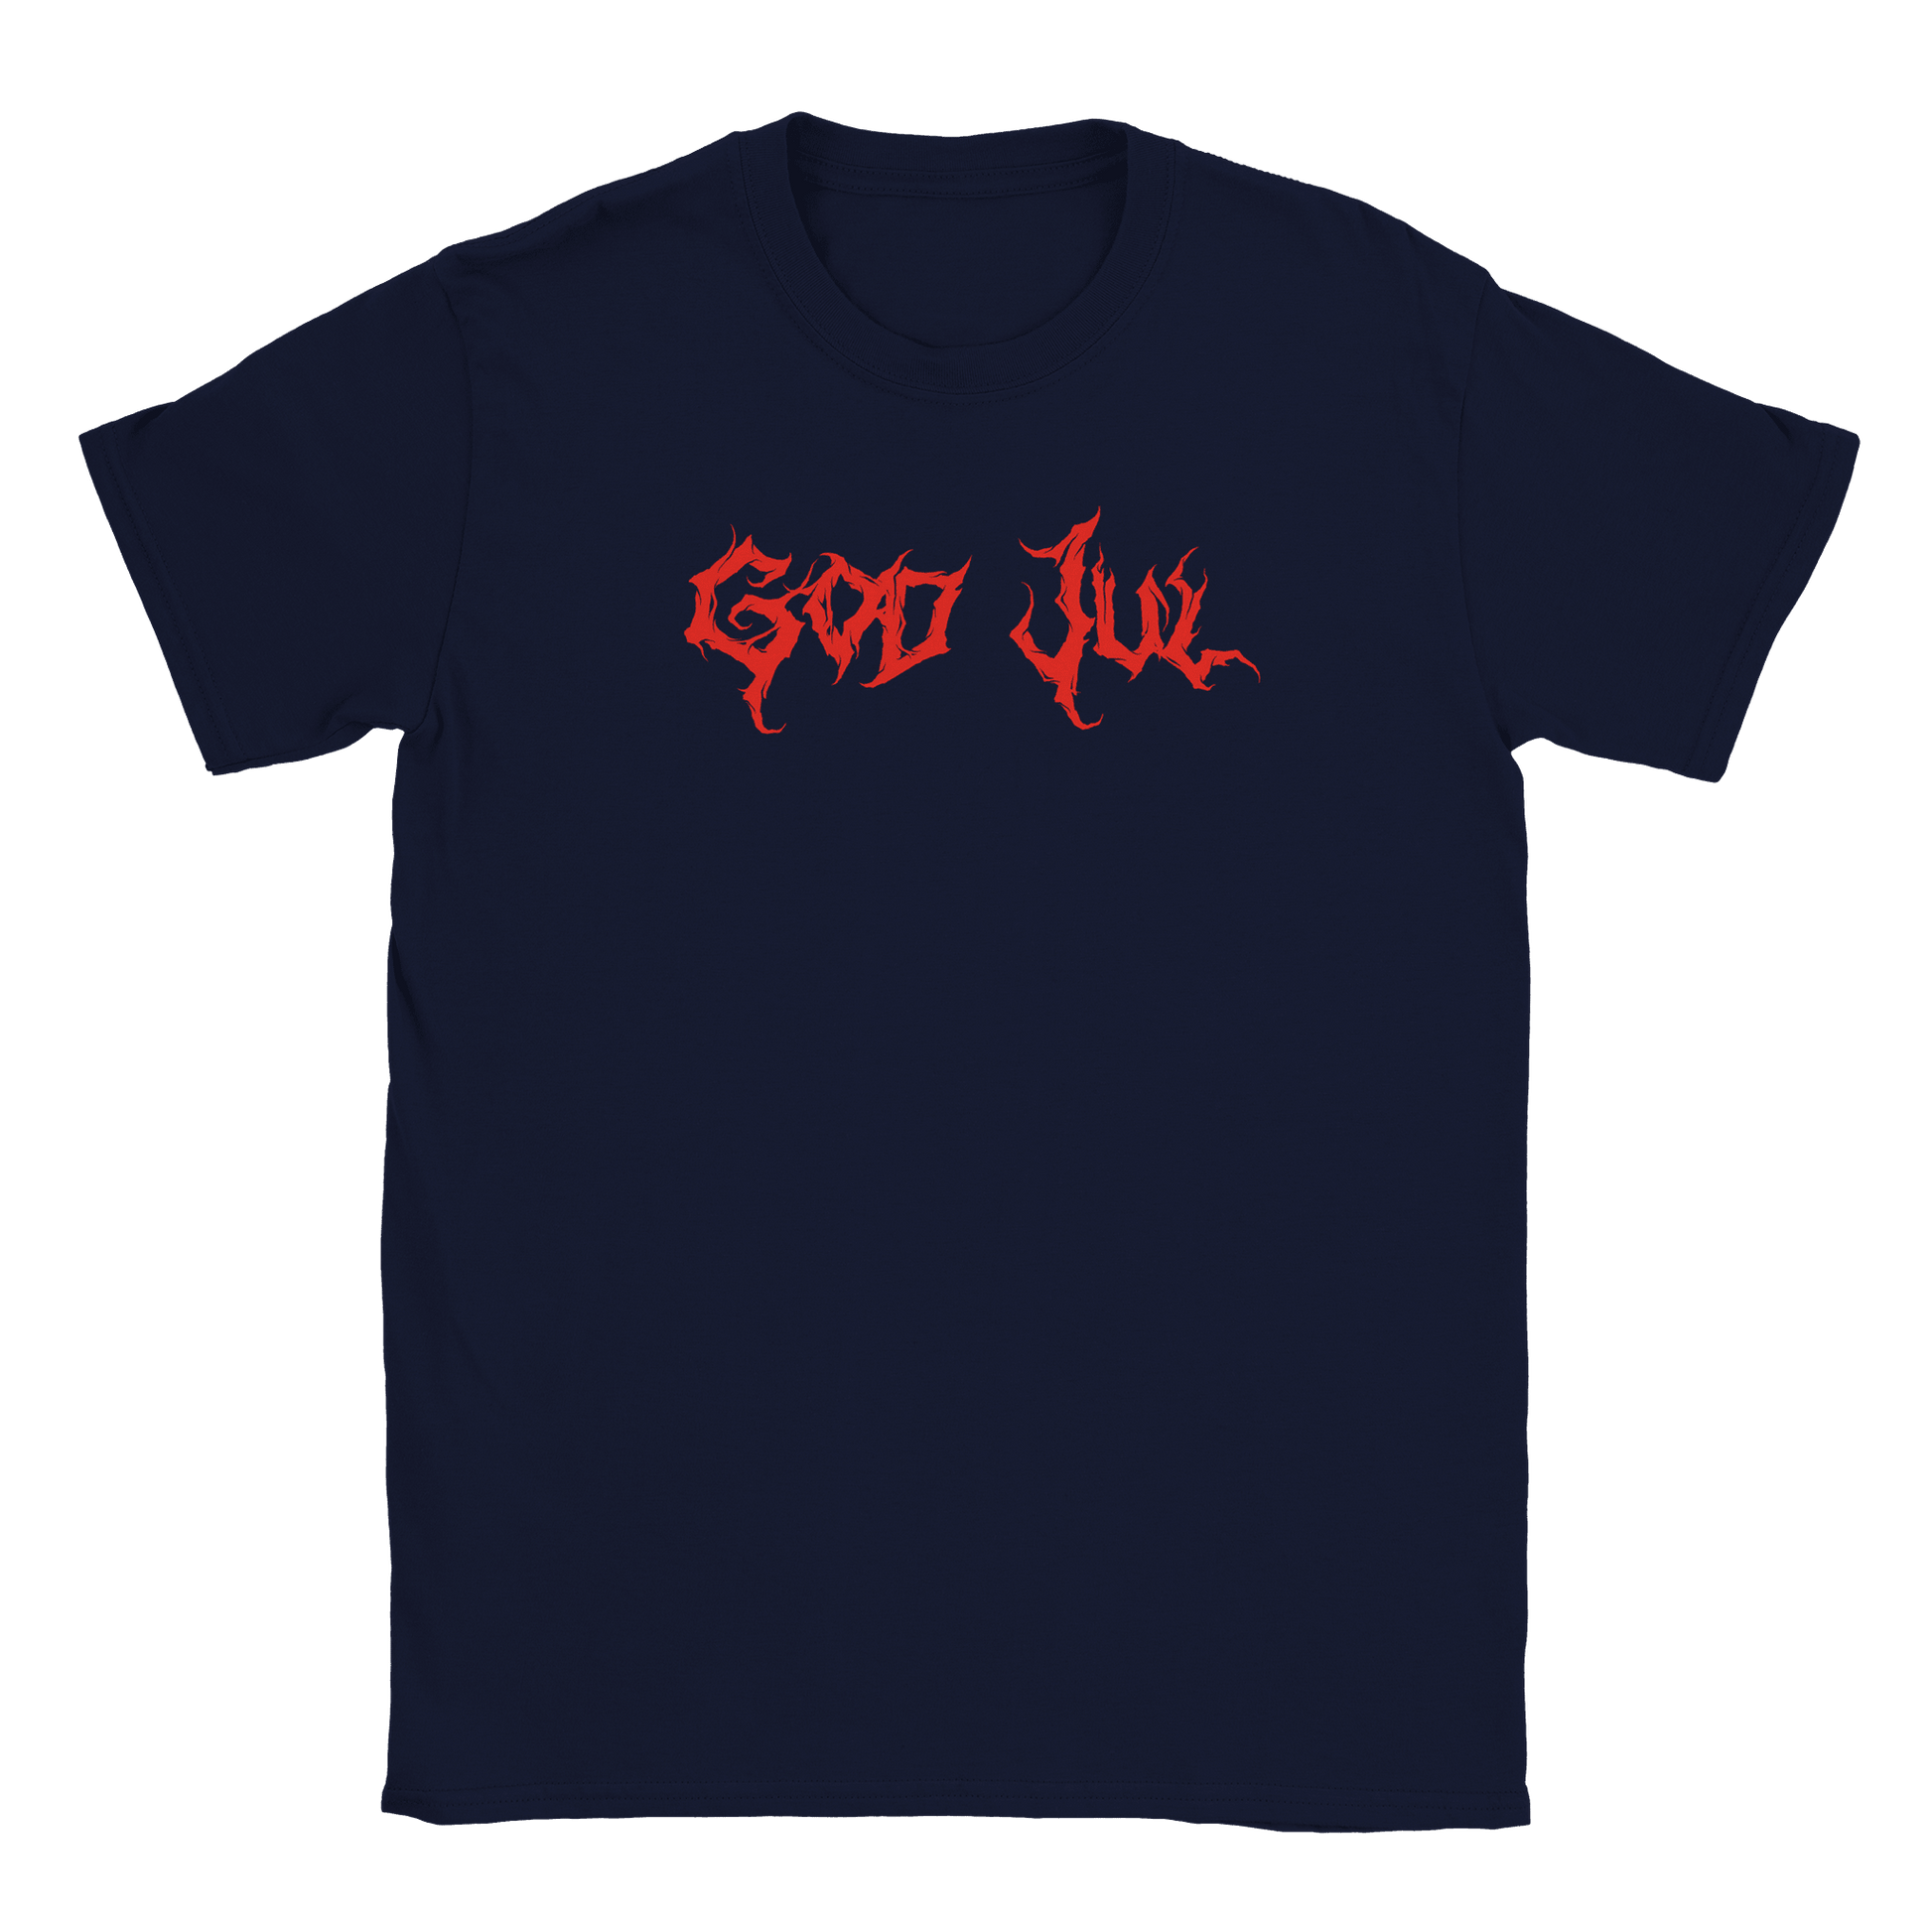 God Jul - T-shirt Marinblå